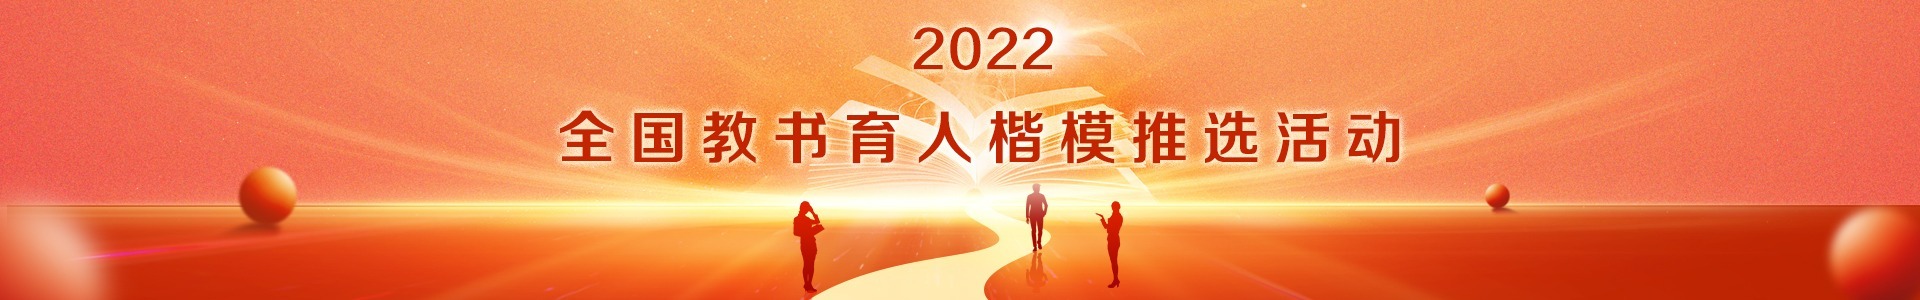 楷模2022